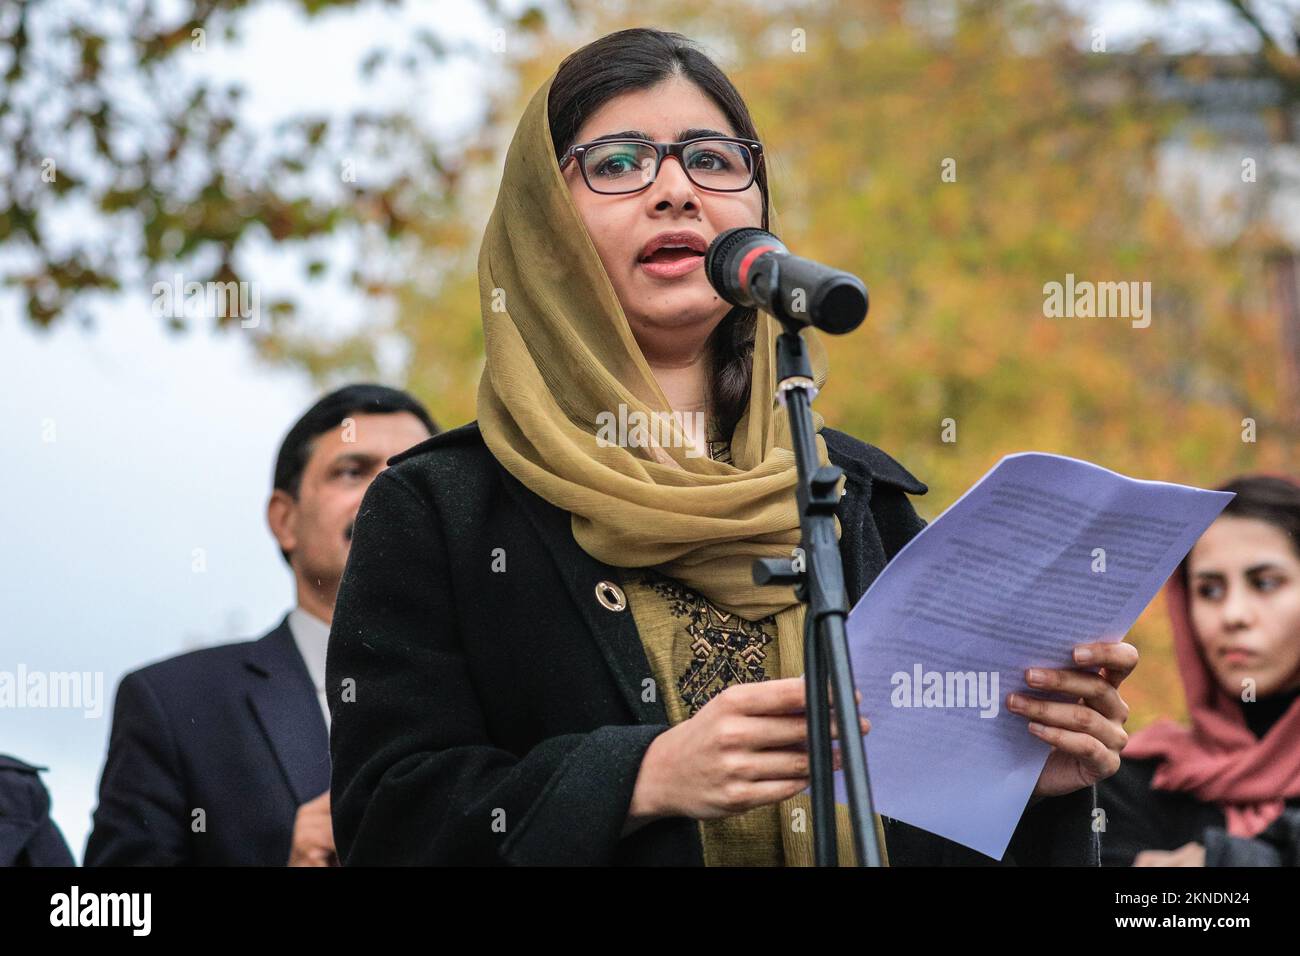 London, Großbritannien. 27.. November 2022. Malala Yousafzai, Friedensnobelpreisträgerin, Menschenrechtsaktivistin und Frauenbildungsprofechterin, spricht auf der Veranstaltung und steht dann solidarisch mit anderen Teilnehmern. Beide Eltern sind ebenfalls anwesend. Der Marsch für Freiheit und Bildung für afghanische Frauen und Mädchen wird von Stand4NRF und März für Frauen organisiert. Es geht vom Hyde Park zur Downing Street, wo mehrere Redner auf die Bühne gehen, um für die Rechte und Freiheiten der afghanischen Frauen zu sprechen. Kredit: Imageplotter/Alamy Live News Stockfoto